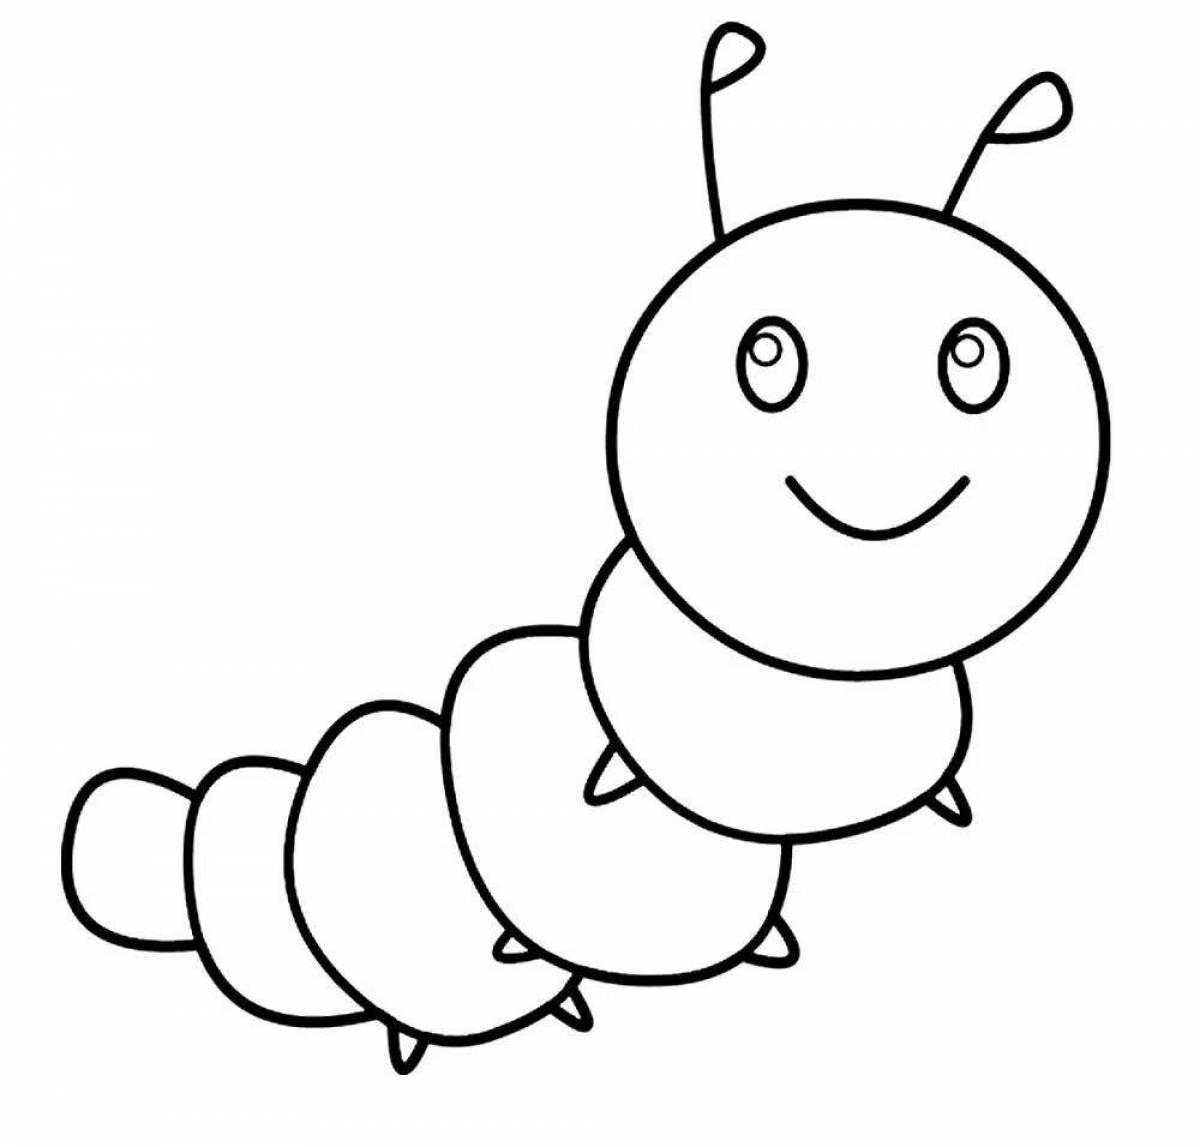 Увлекательная раскраска caterpillar для детей